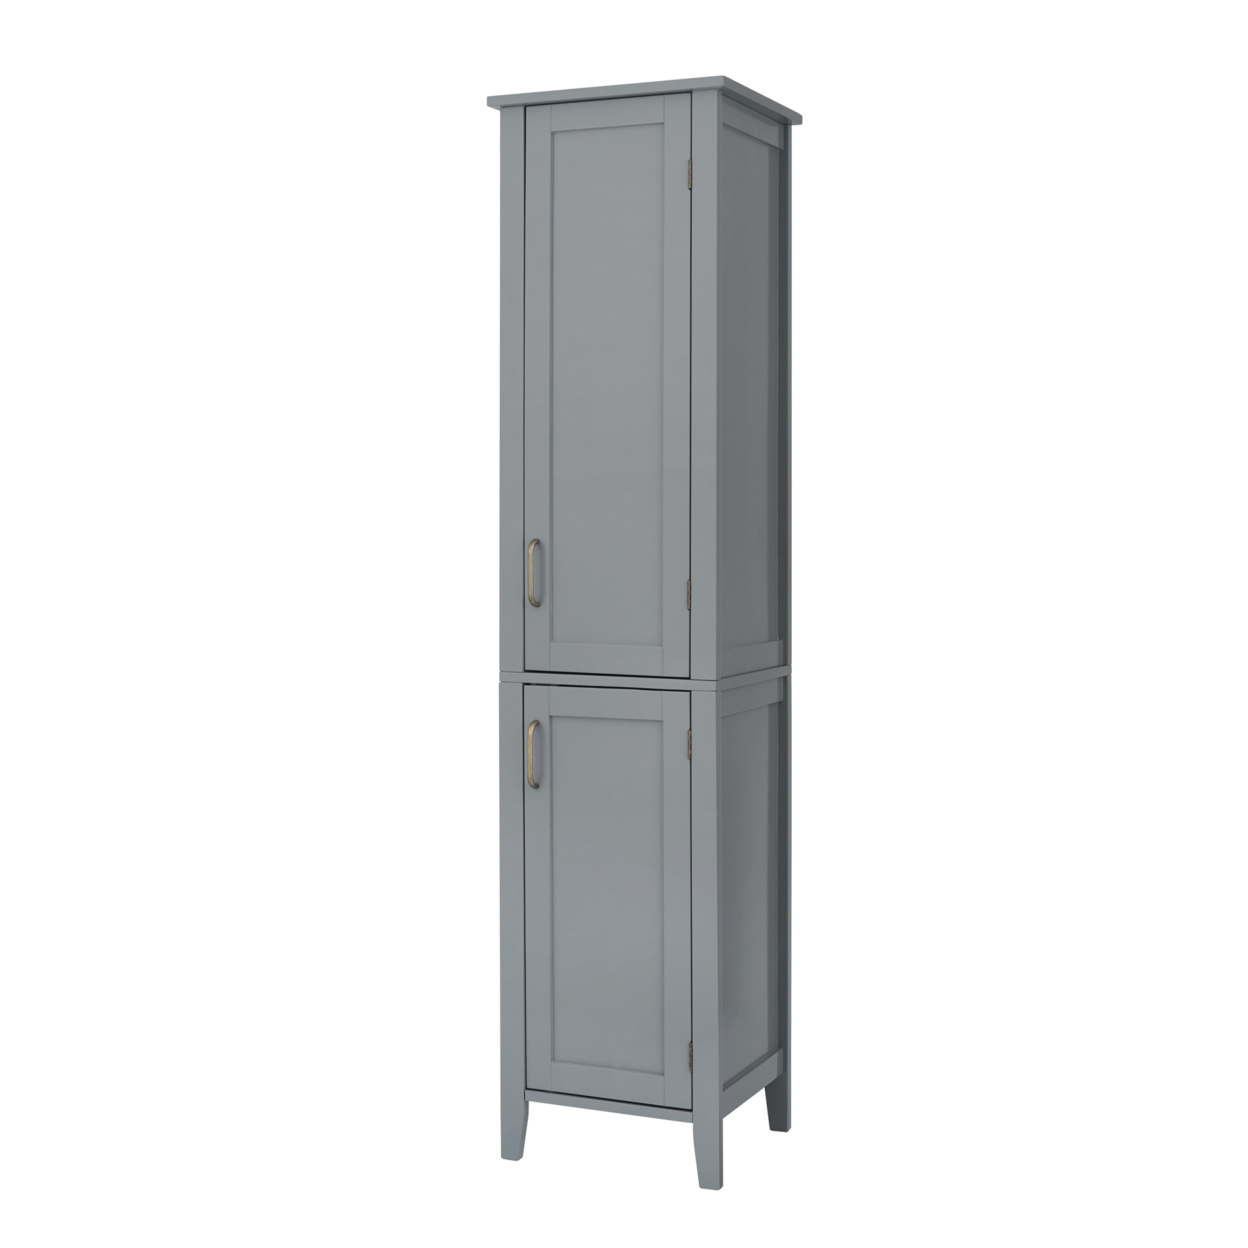 Elegant Home Fashions Wooden Bathroom Cabinet Floor Grey EHF-F0017